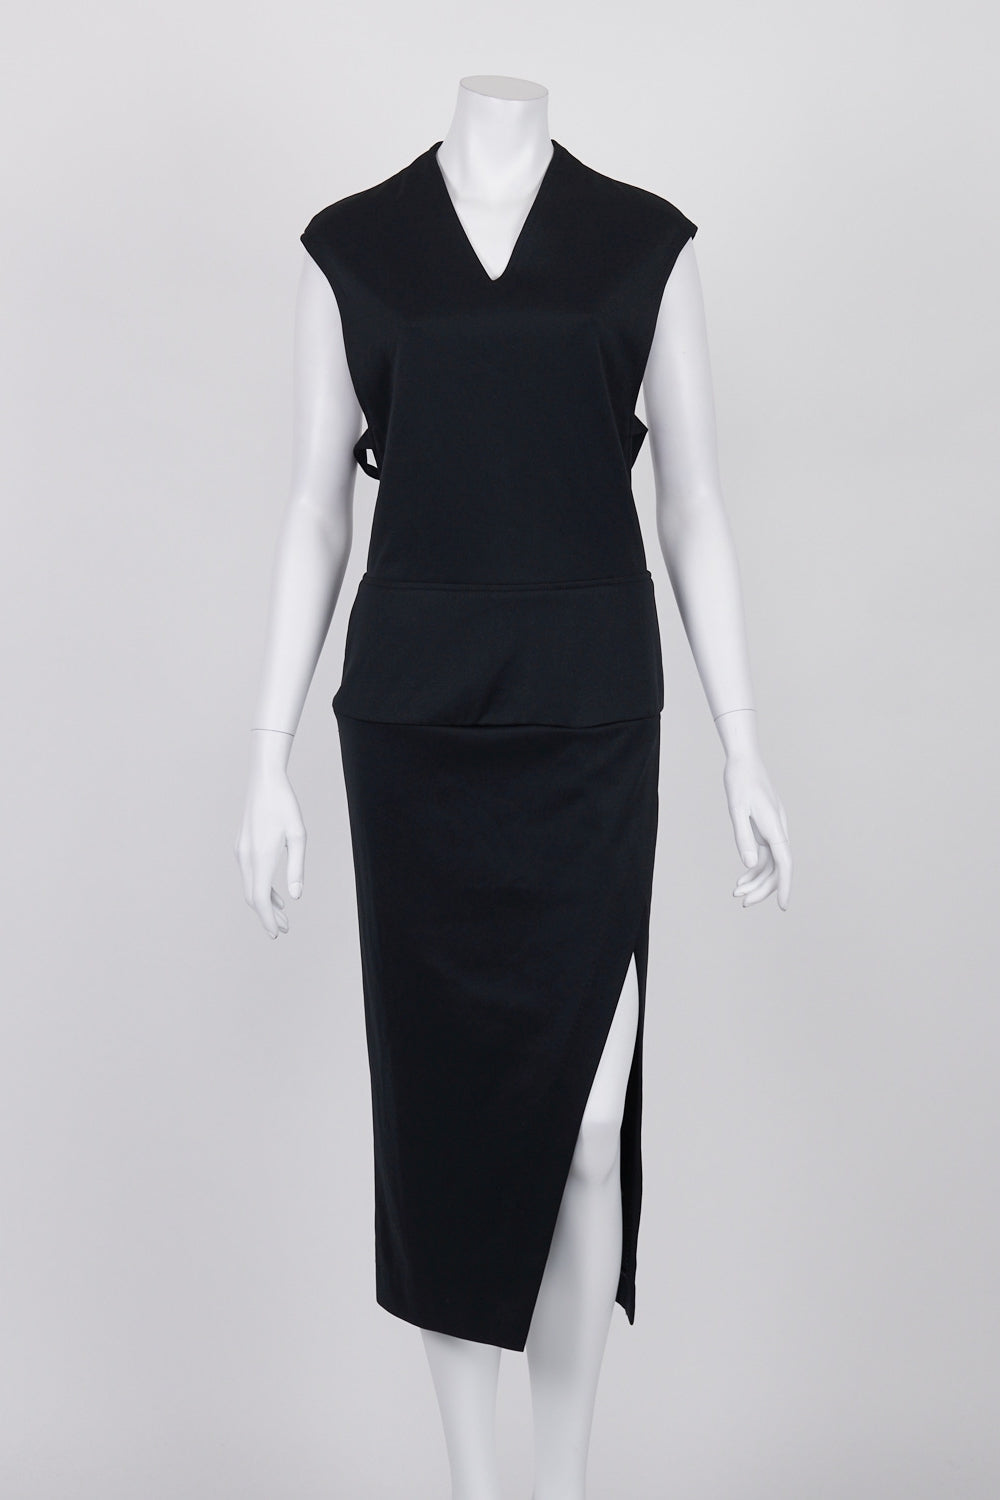 Maurie & Eve Black Side Cutout Midi Dress 12